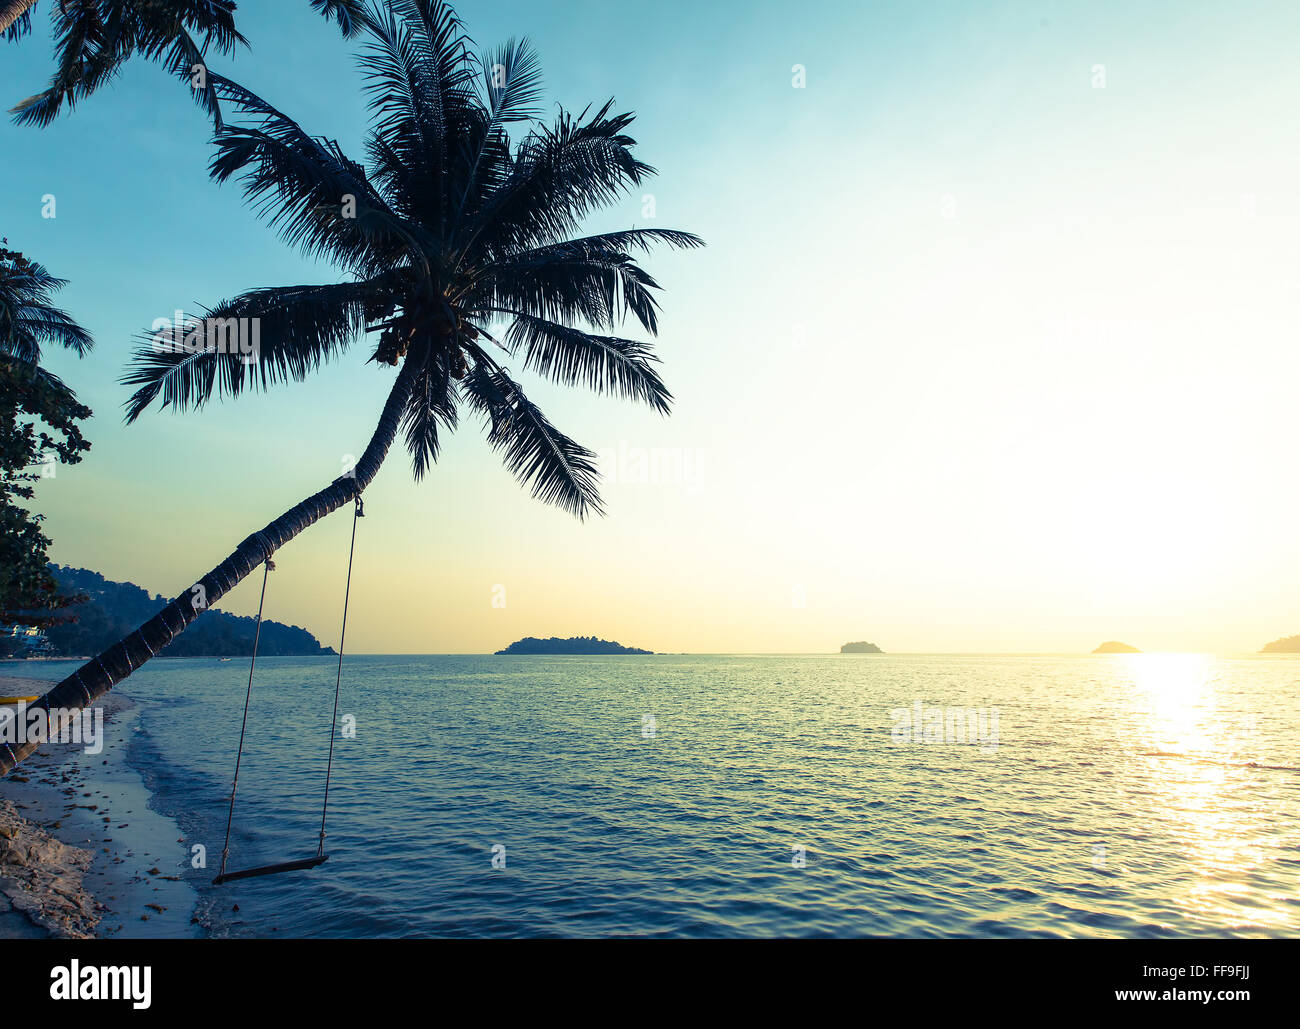 Magnifique coucher de soleil sur une plage tropicale, palmier avec une balançoire. Banque D'Images